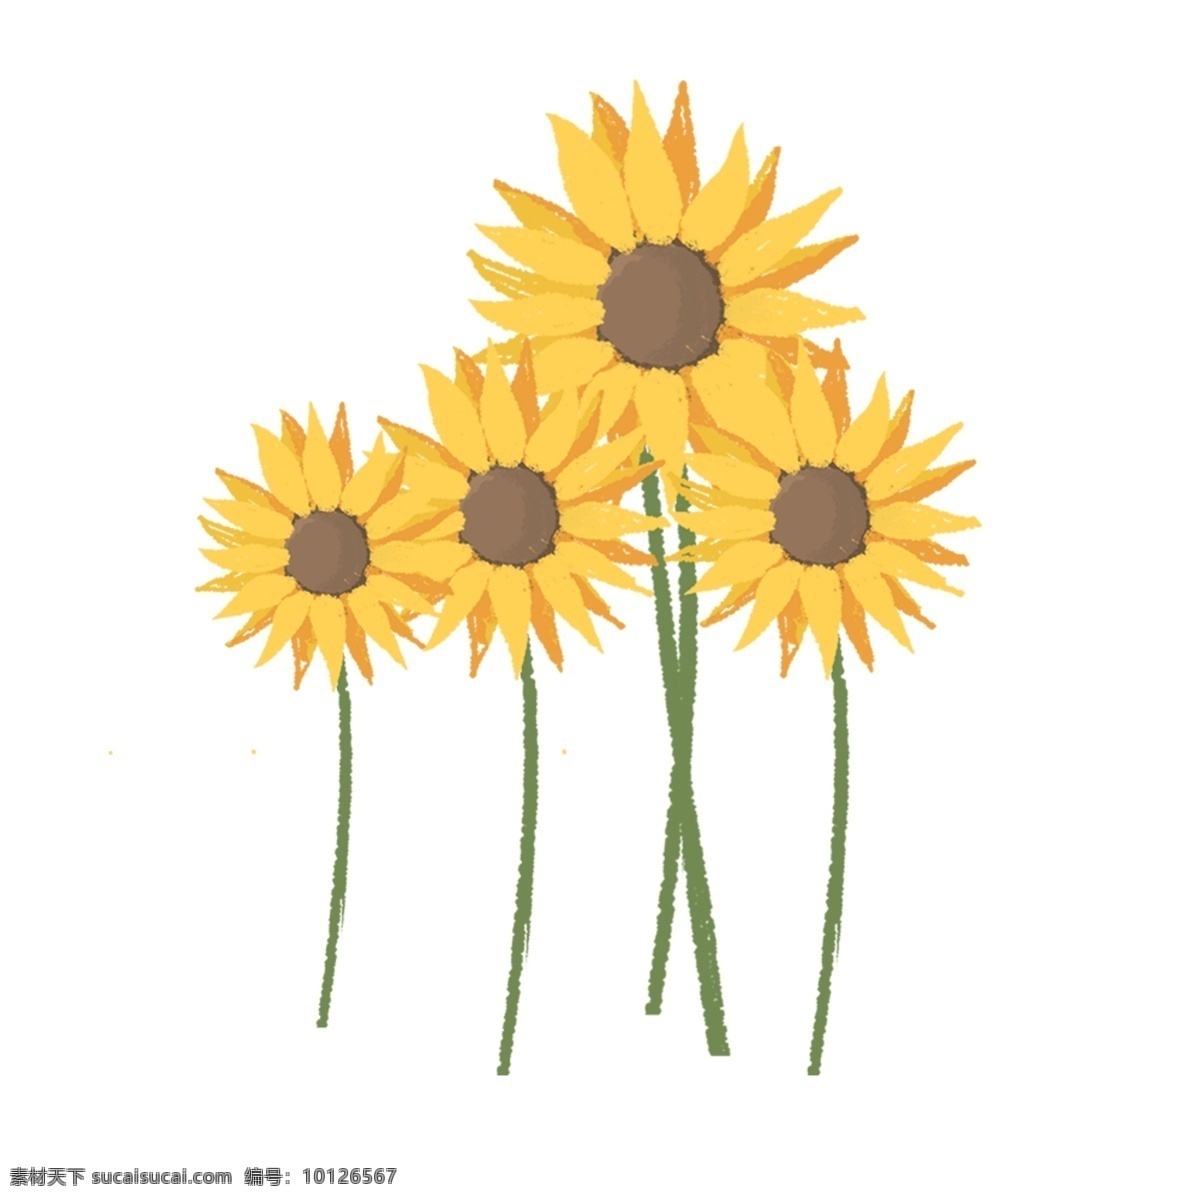 夏季 黄色 太阳花 元素 黄色太阳花 向日葵 植物 花卉 卡通向日葵 矢量向日葵 黄色花朵 清新向日葵